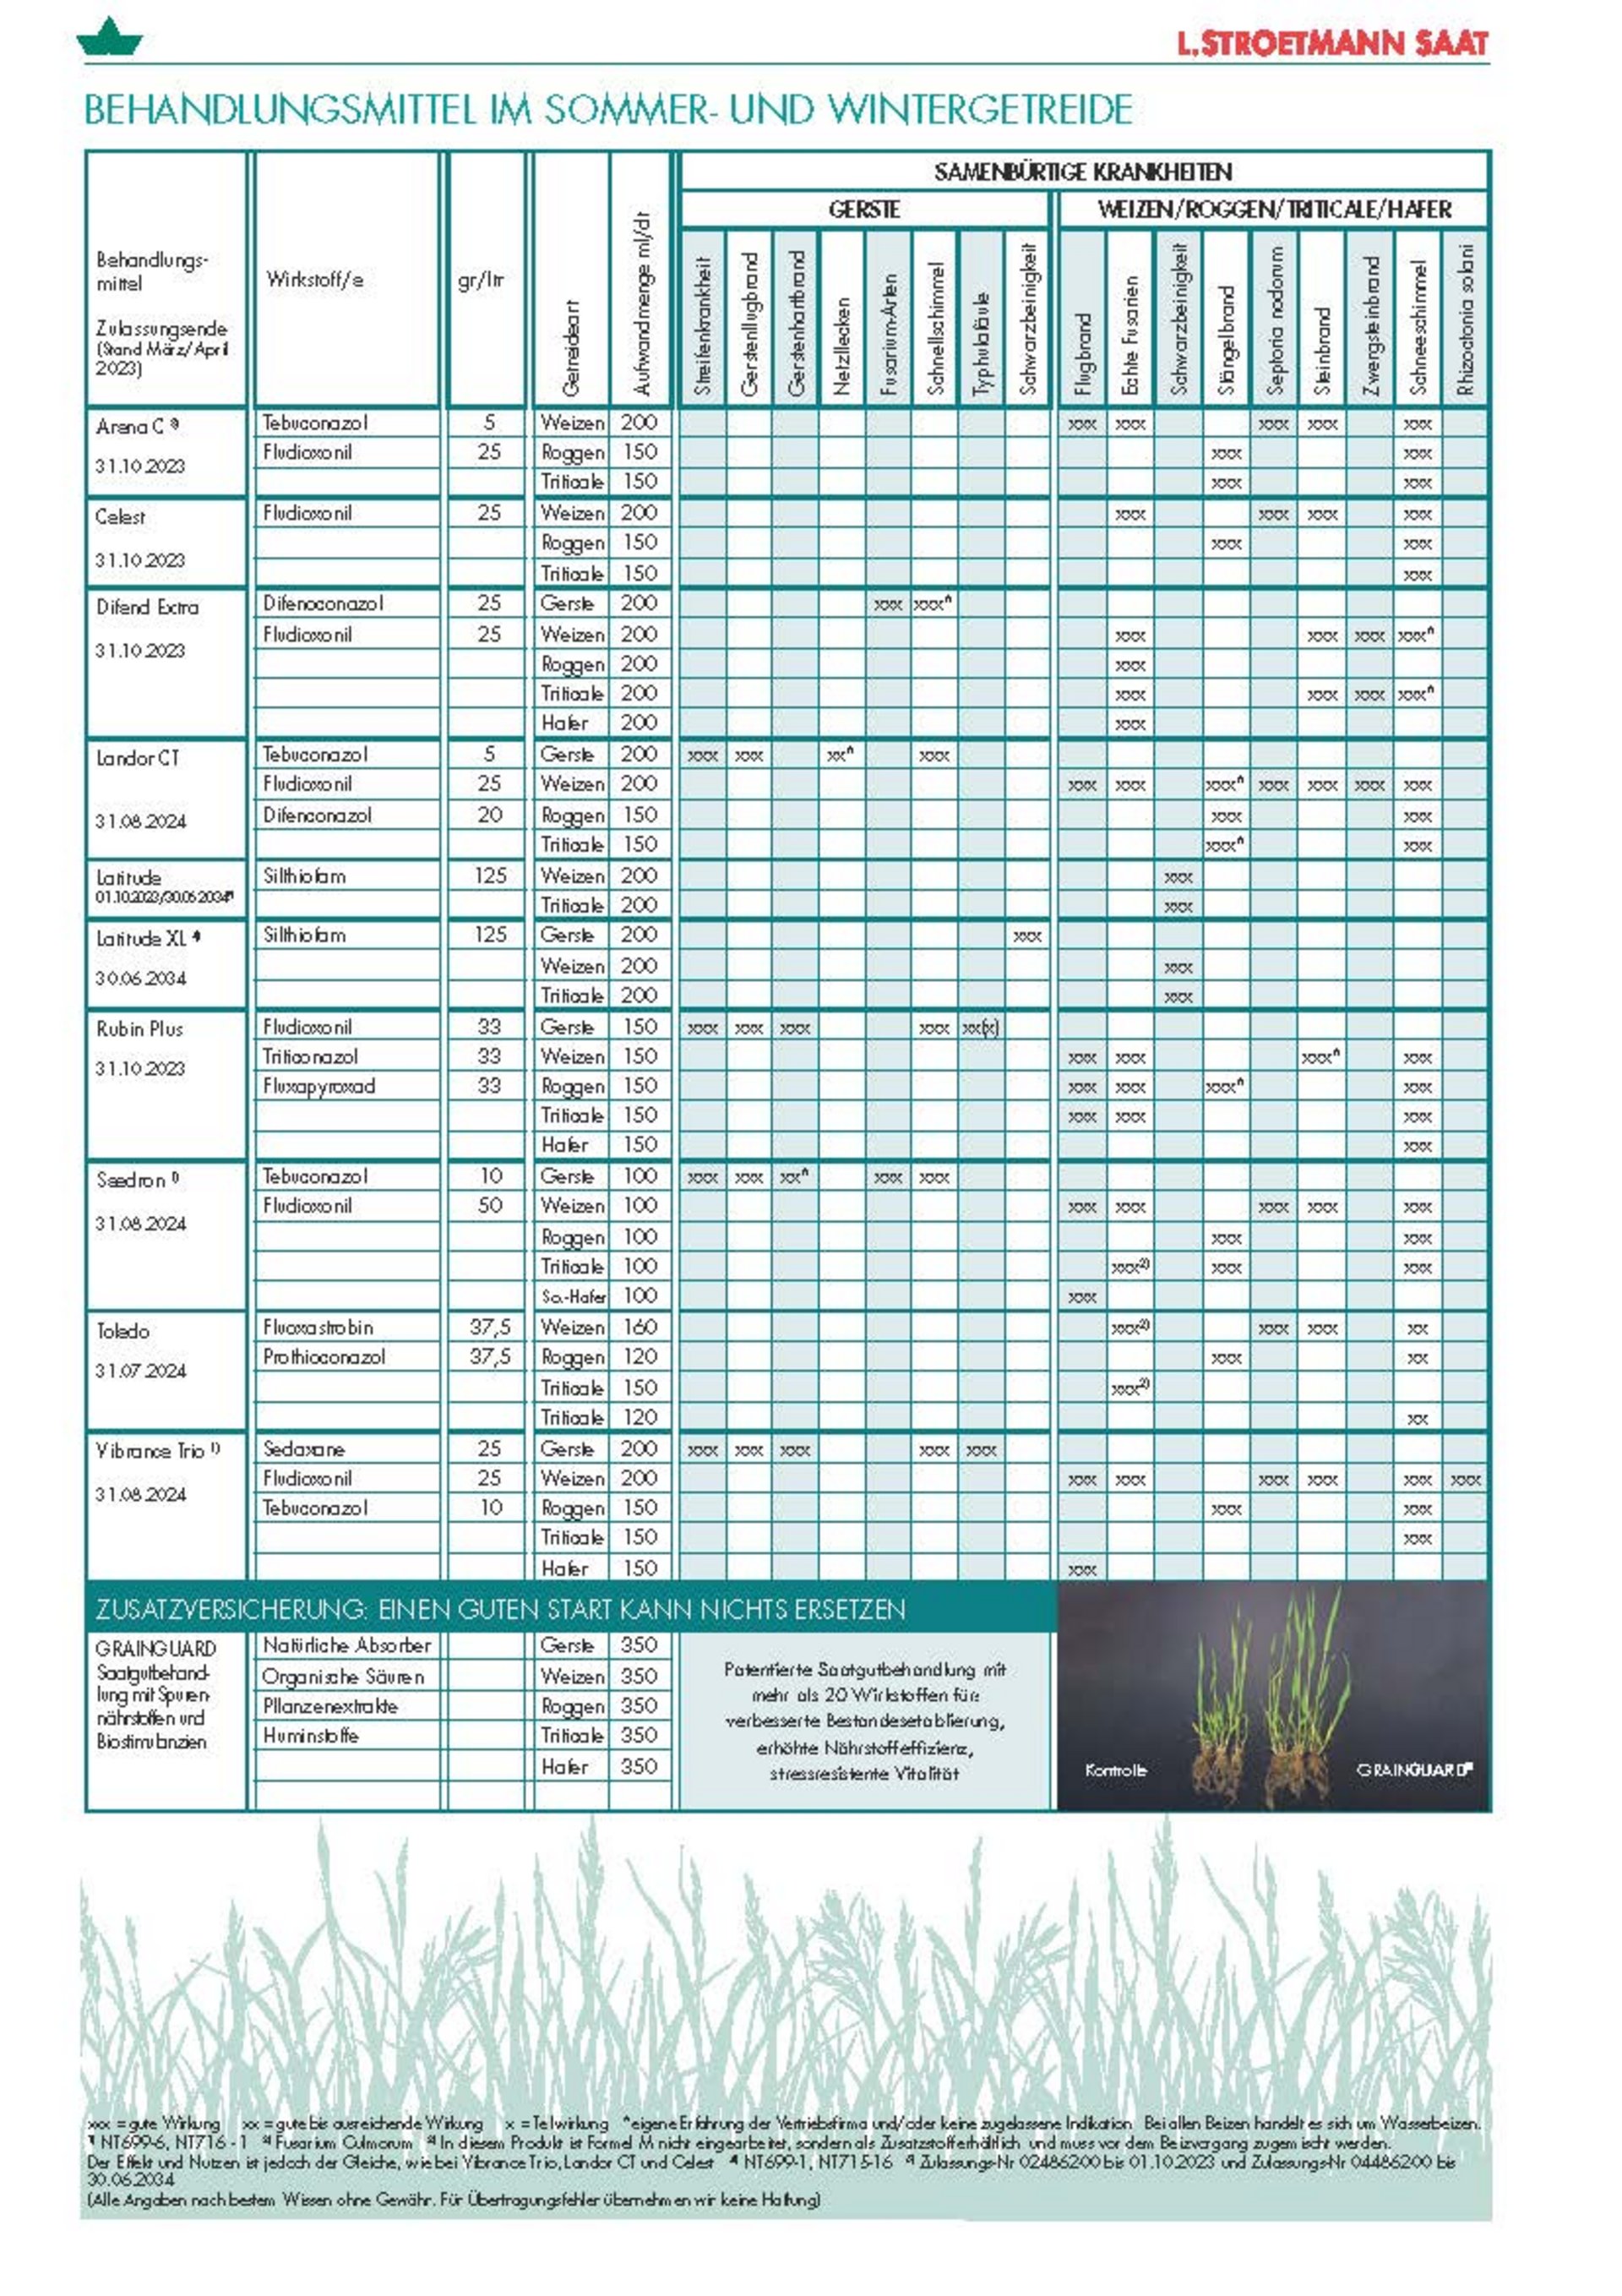 Übersicht über die aktuell zugelassenen Behandlungsmittel für Sommer- und Wintergetreide für Getreidesorten von L. Stroetmann Saat